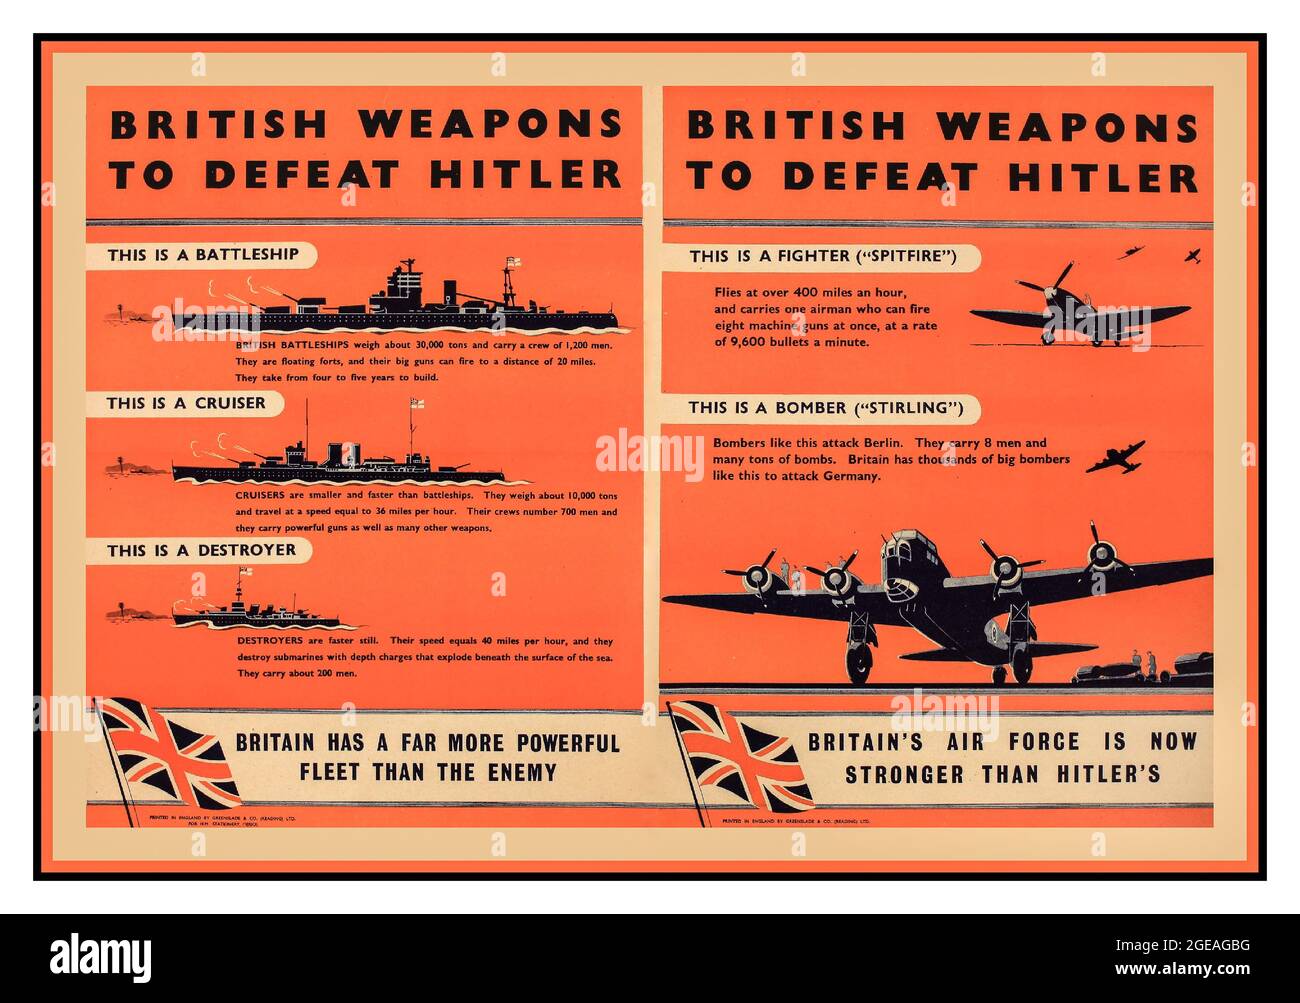 La propagande de la Seconde Guerre mondiale au Royaume-Uni « les armes britanniques pour vaincre Hitler », les navires et les avions, deux affiches originales de propagande de la Seconde Guerre mondiale imprimées pour le HMSO par Greenslade vers 1940 pour renforcer le moral britannique - la Seconde Guerre mondiale Banque D'Images